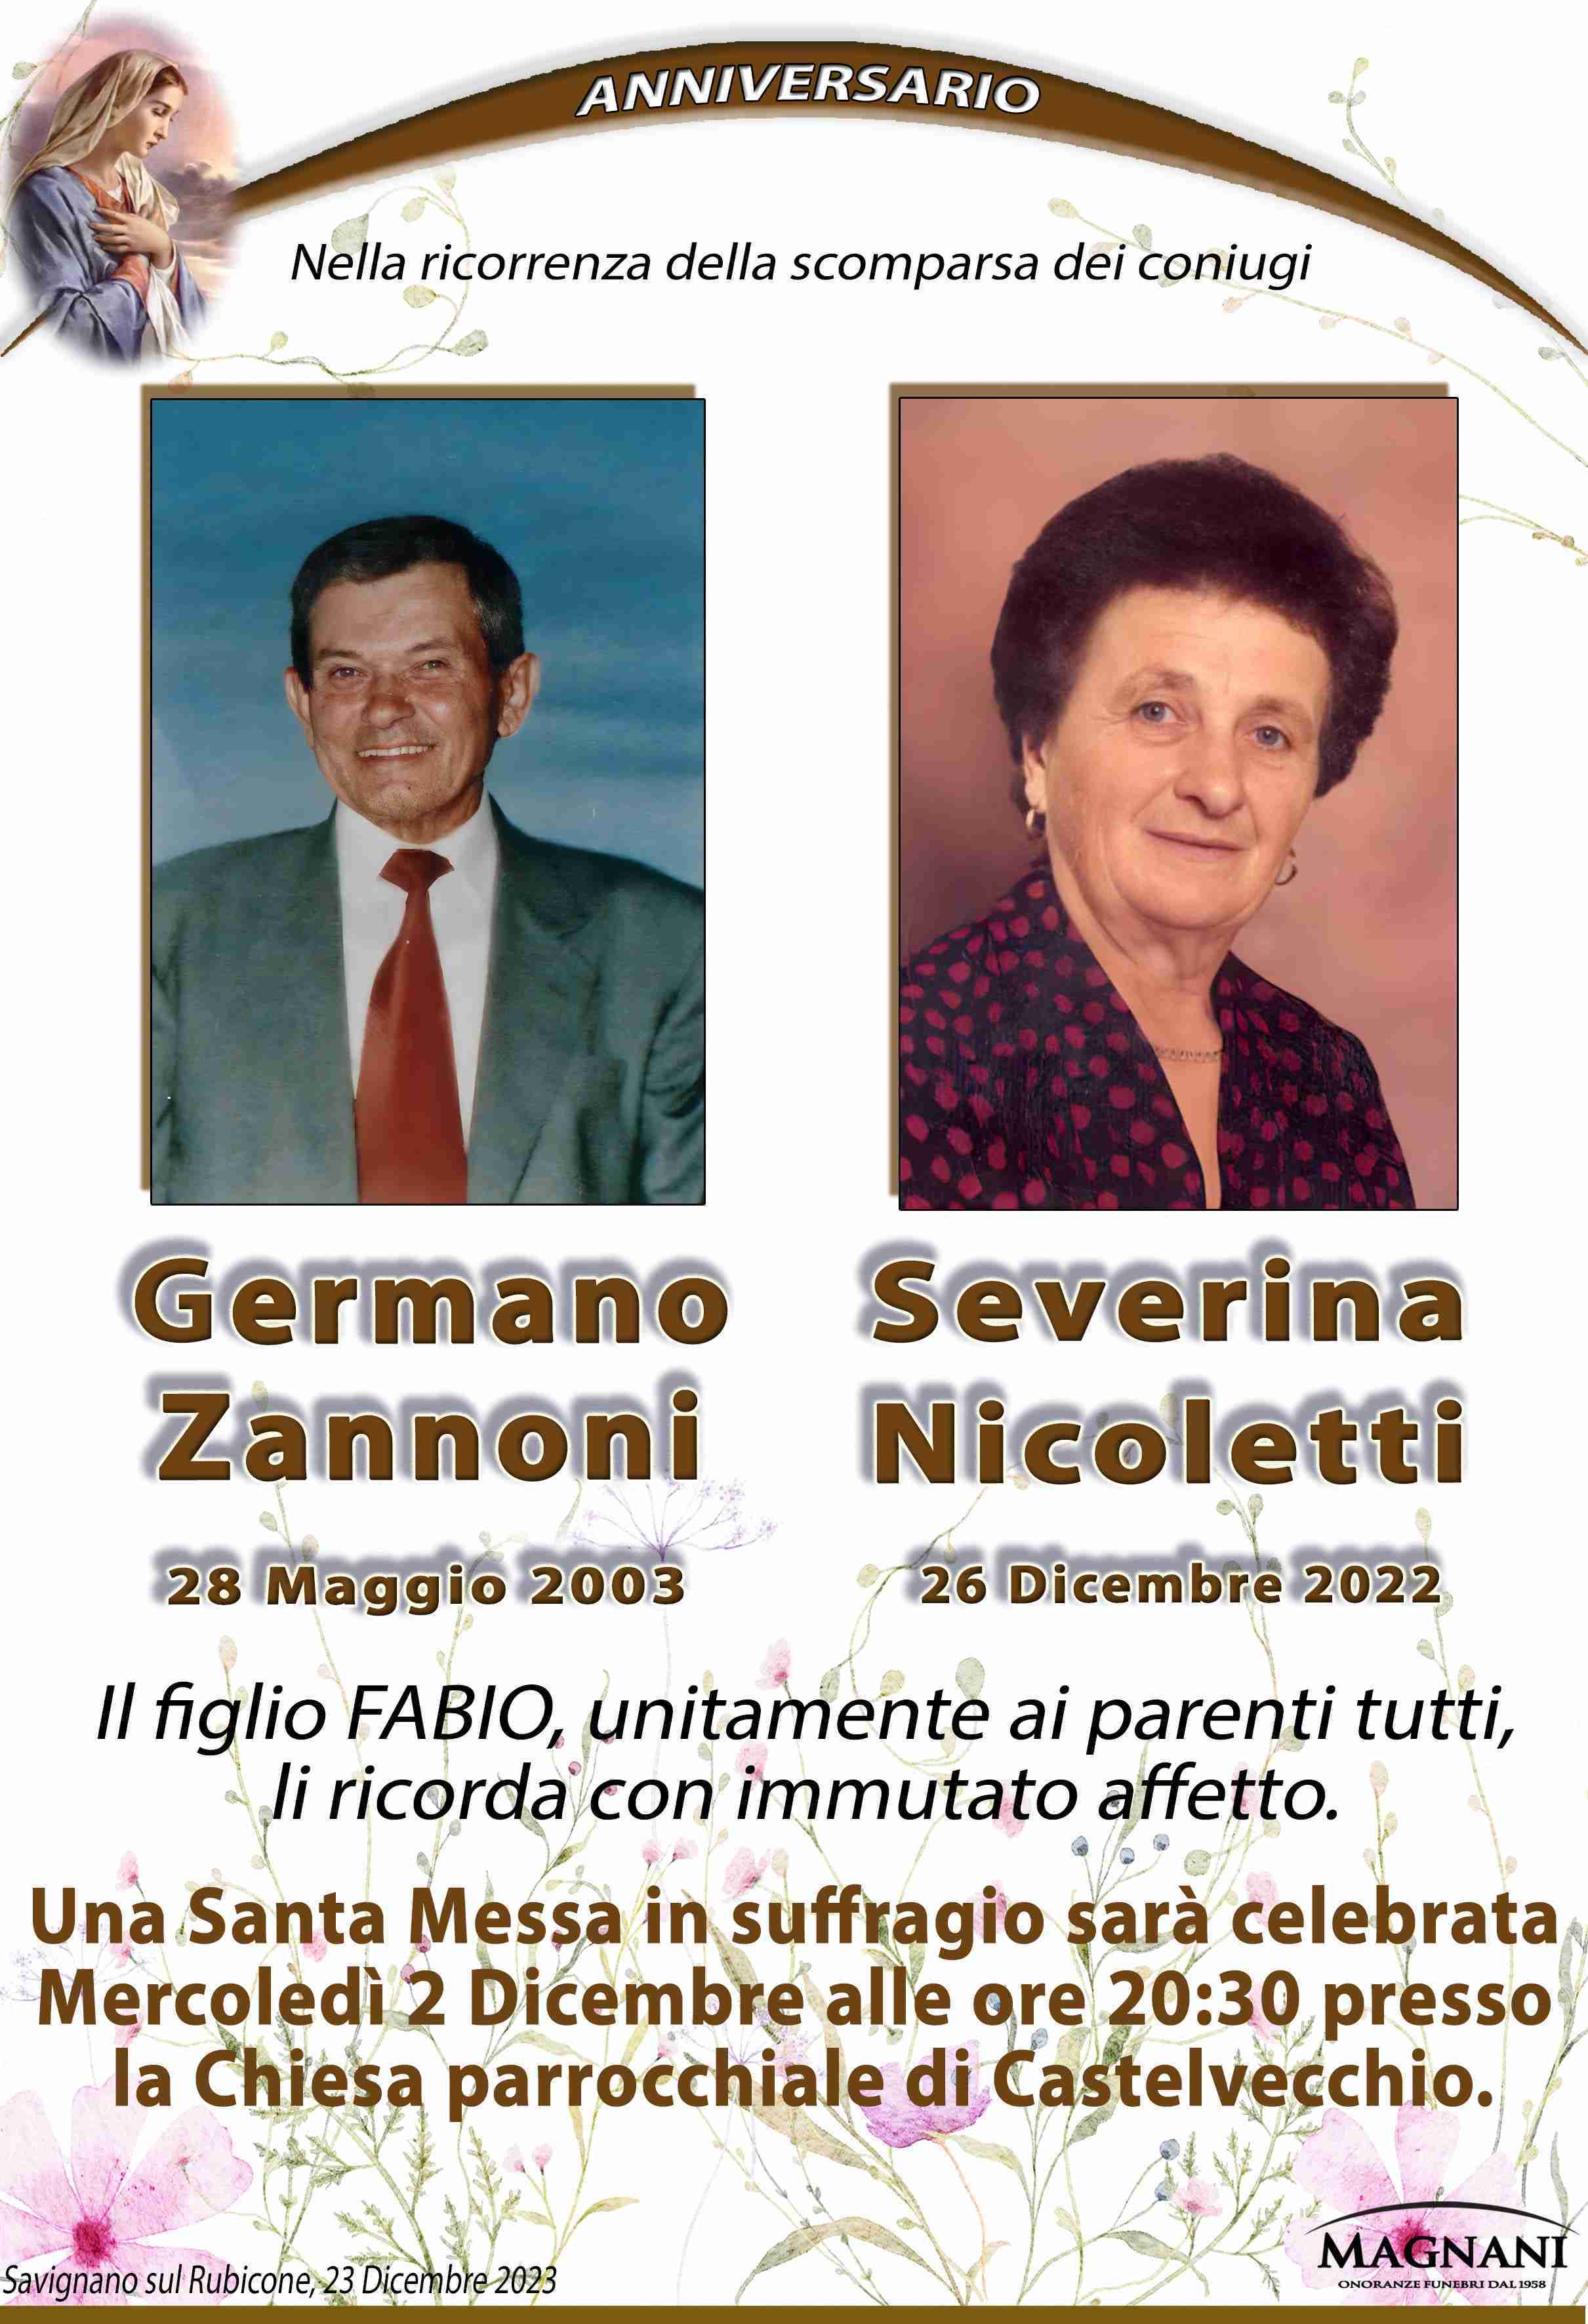 Germano Zannoni e Severina Nicoletti